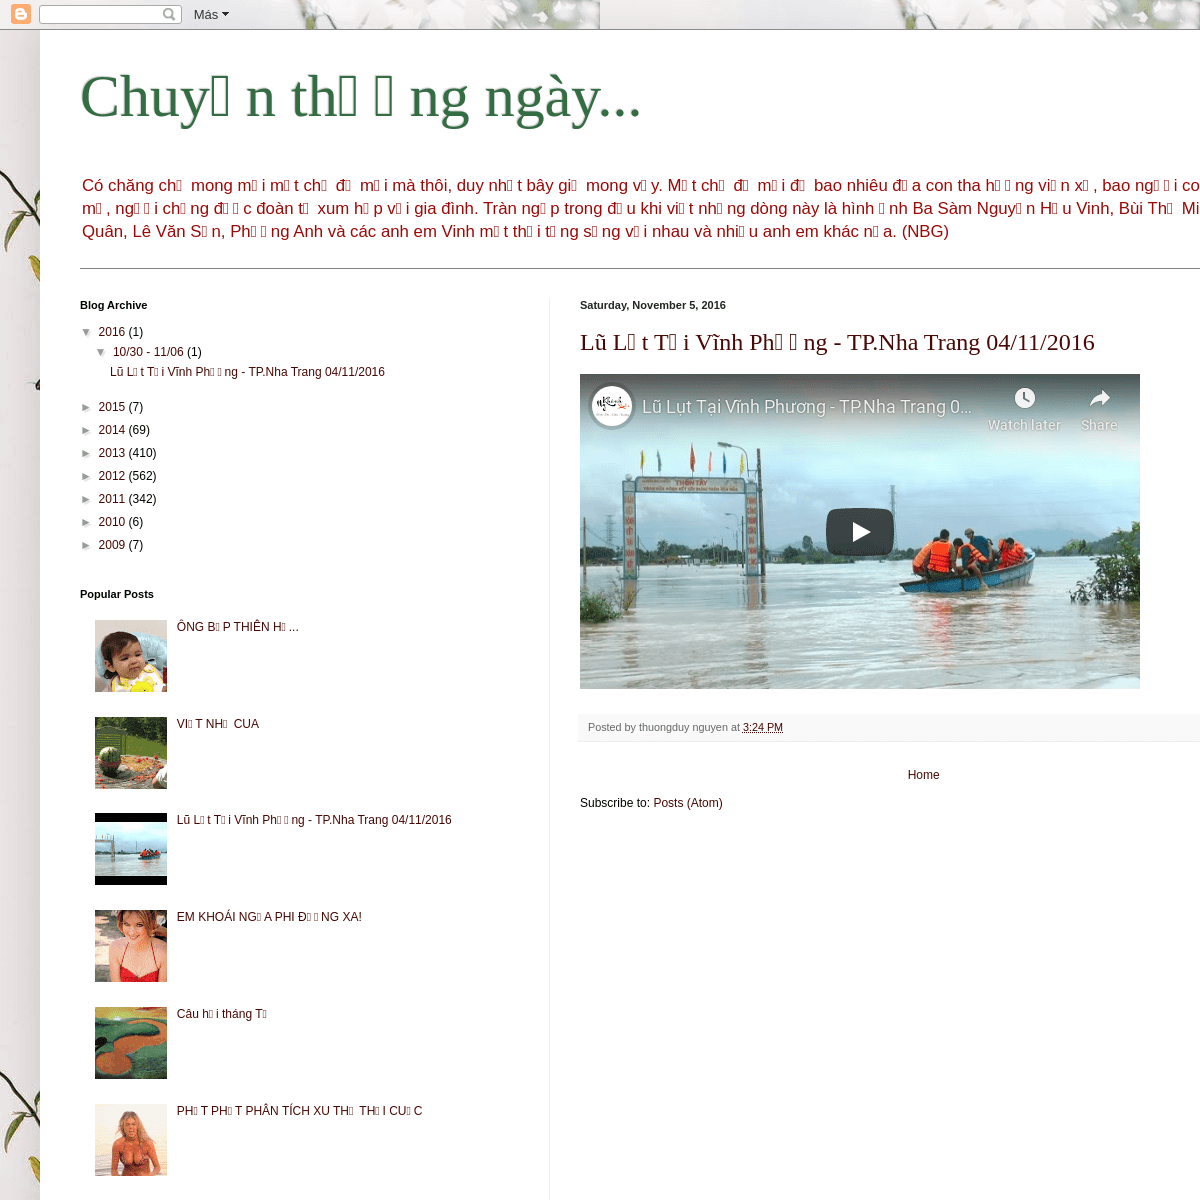 A complete backup of chuyenthuongngayohuyen.blogspot.com